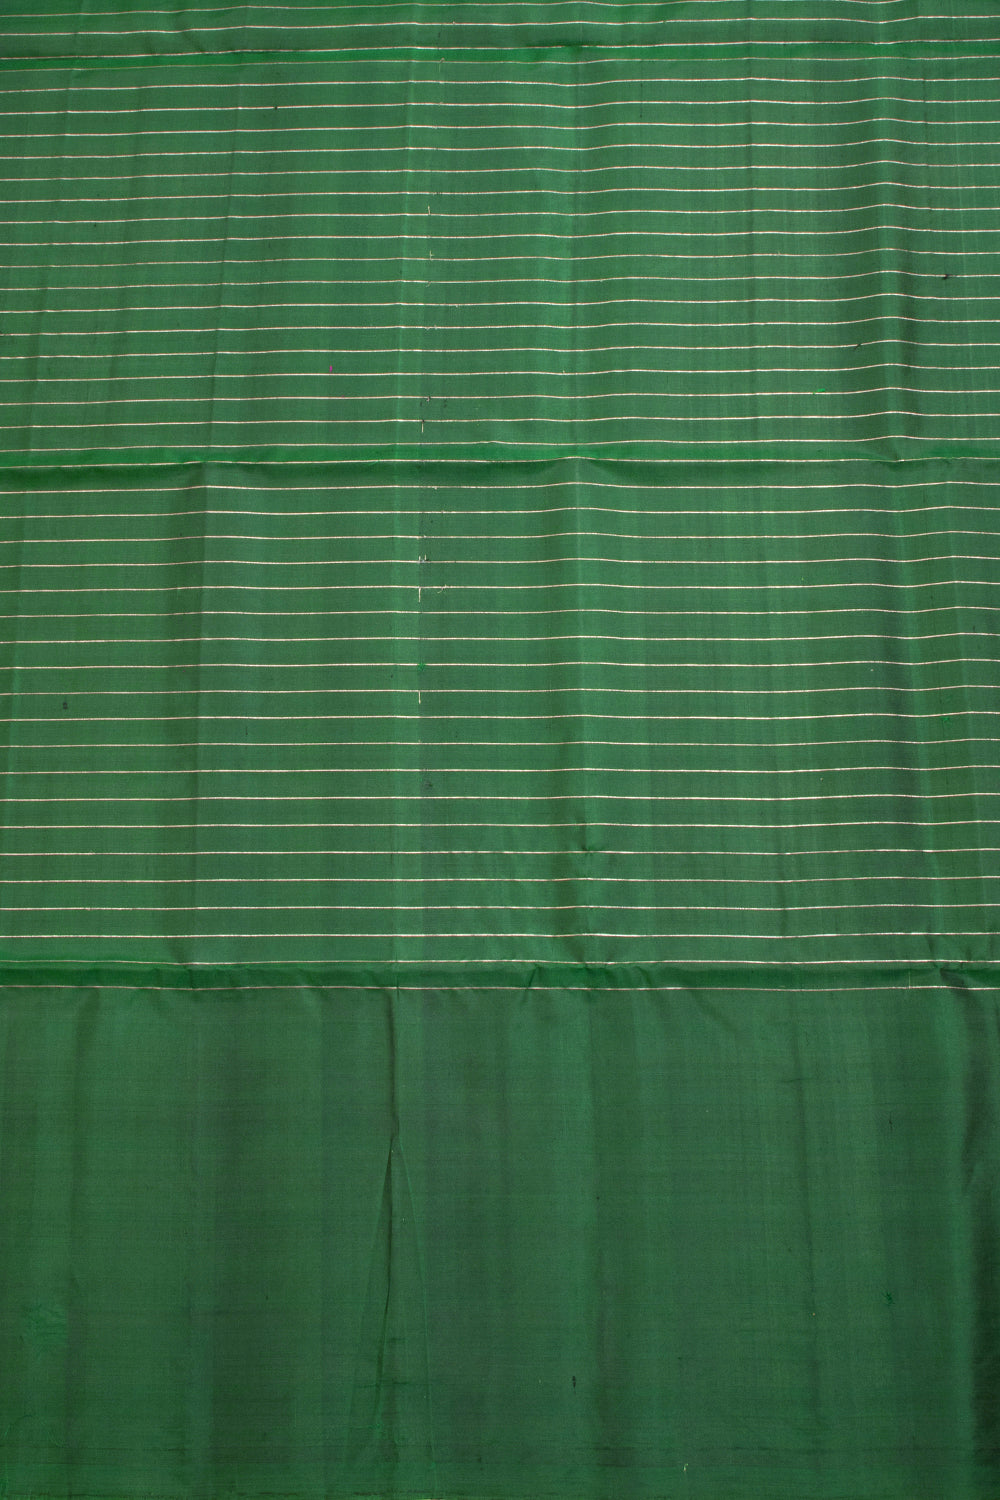 Purple Kanjivaram Soft Silk Saree 10069225 - Avishya